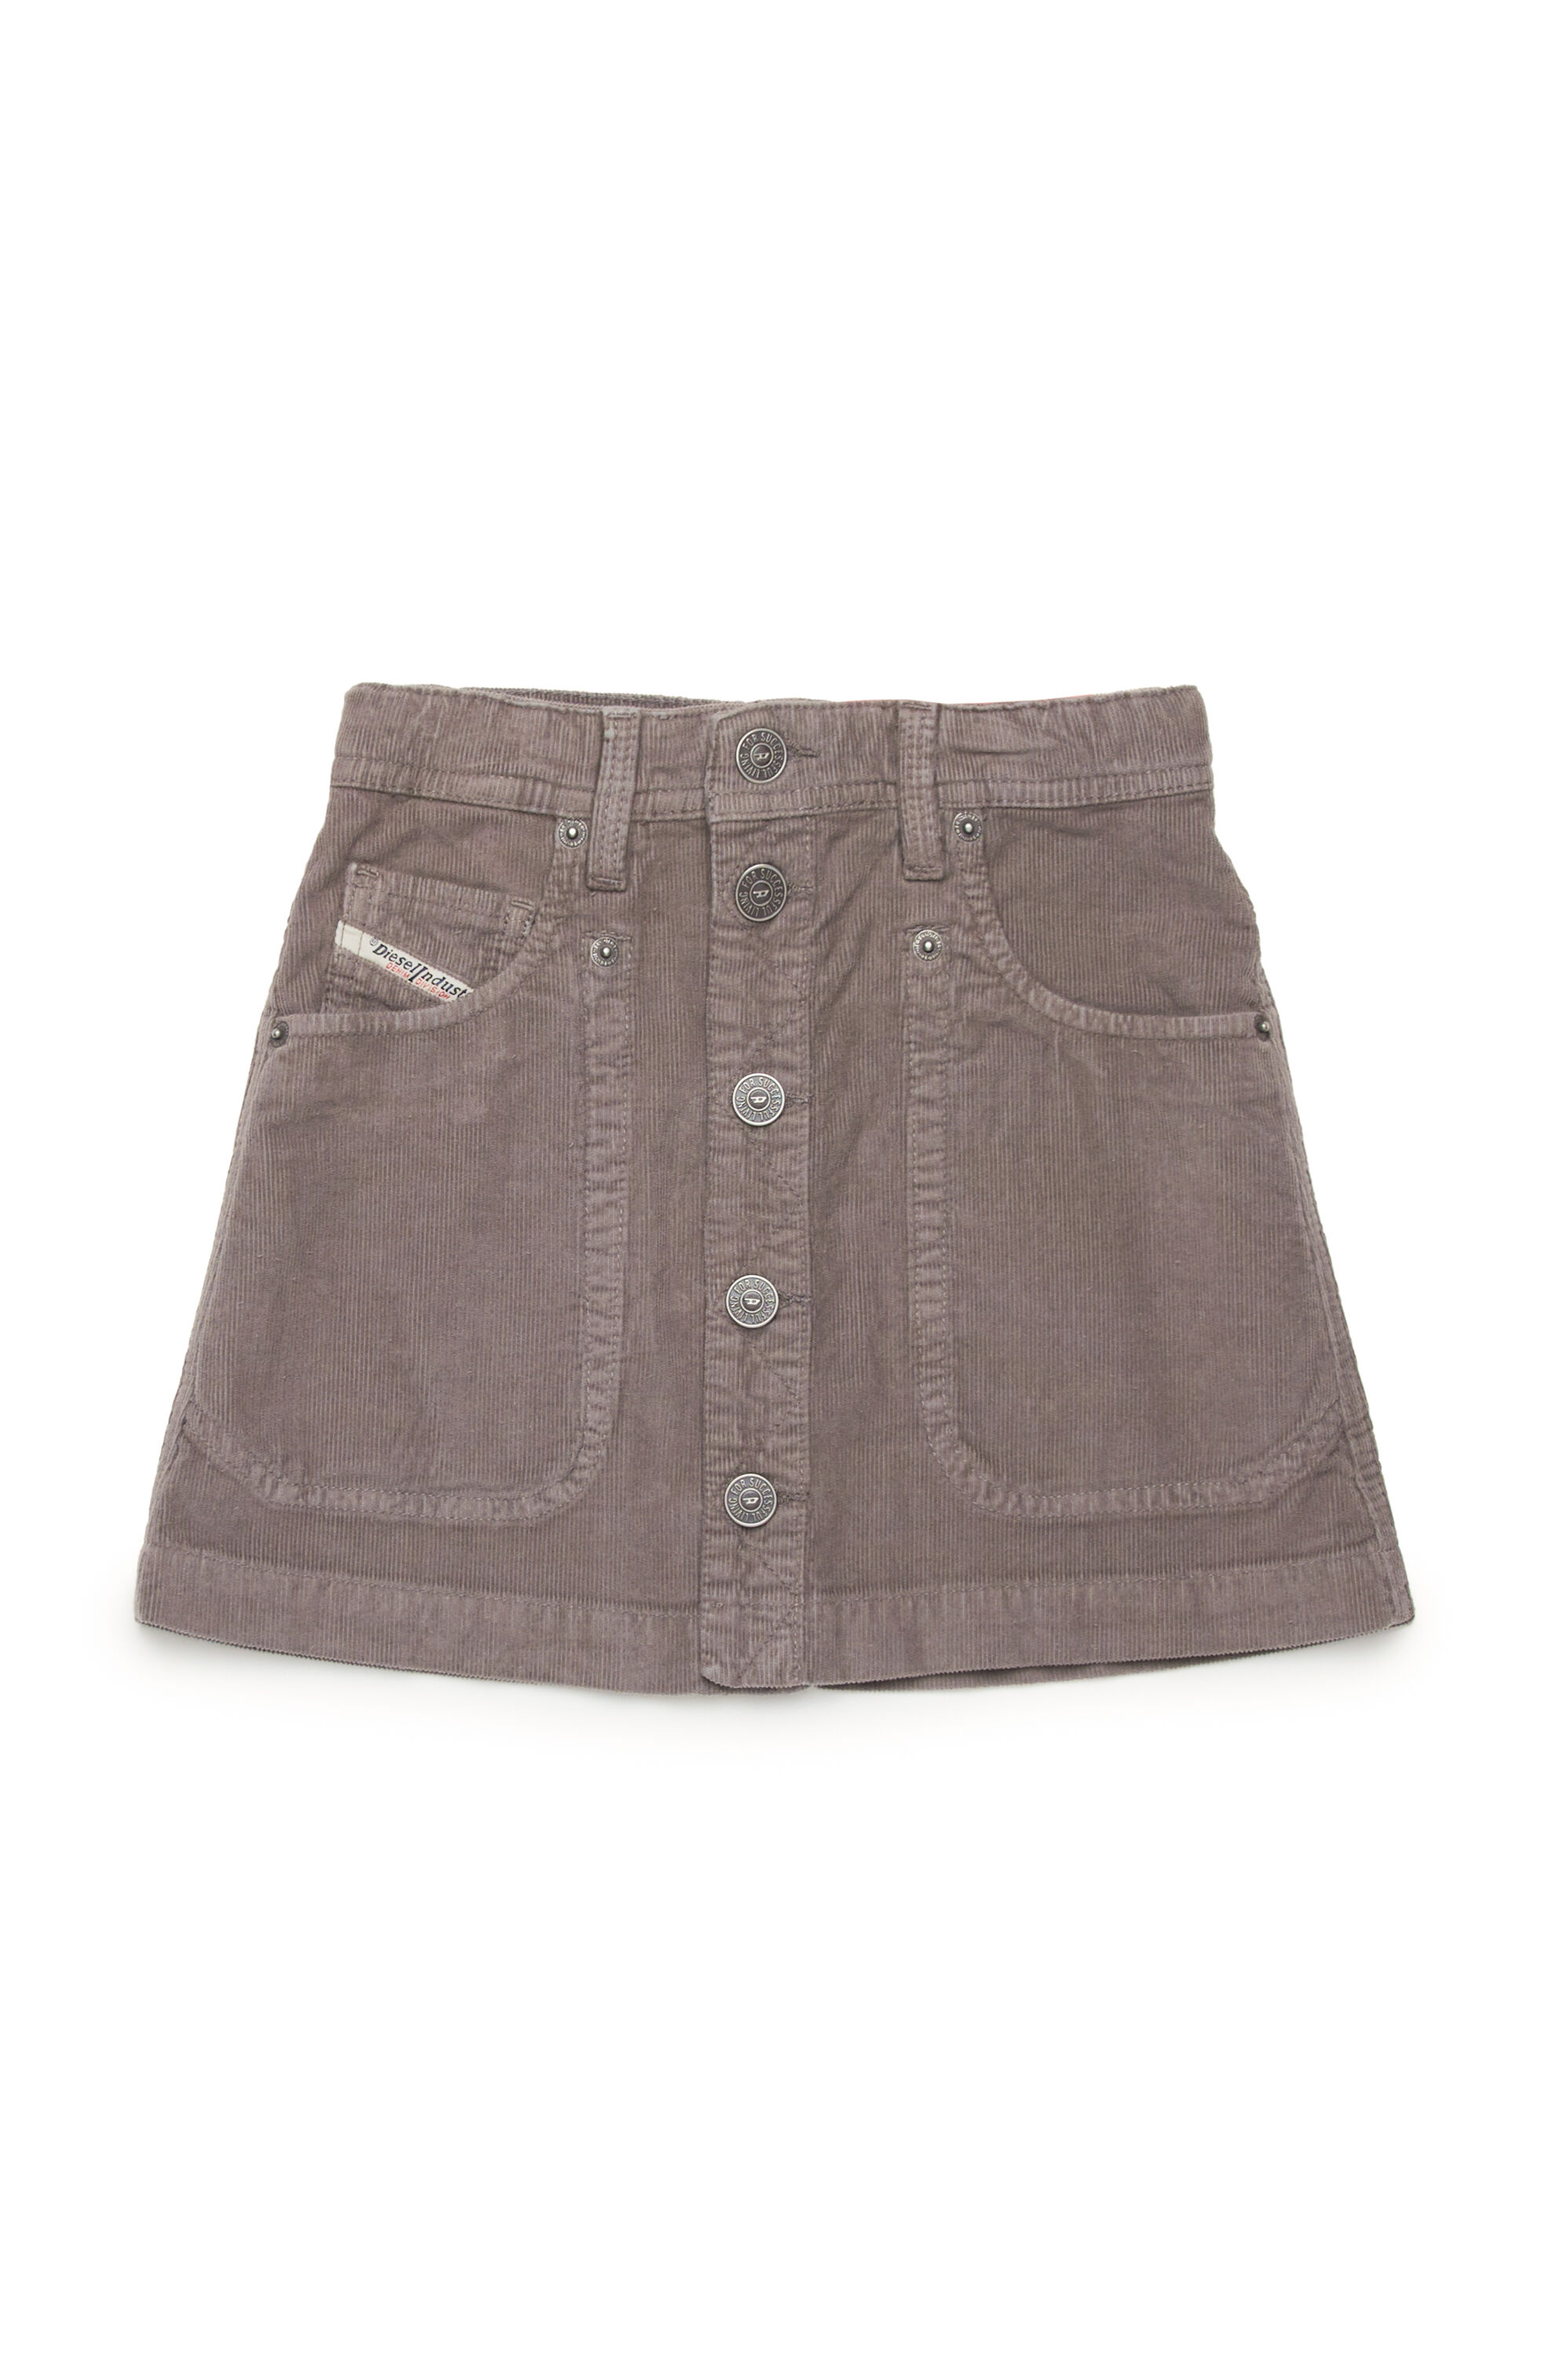 Diesel - GEALBUS, Woman 5-pocket skirt in stretch corduroy in Grey - Image 1